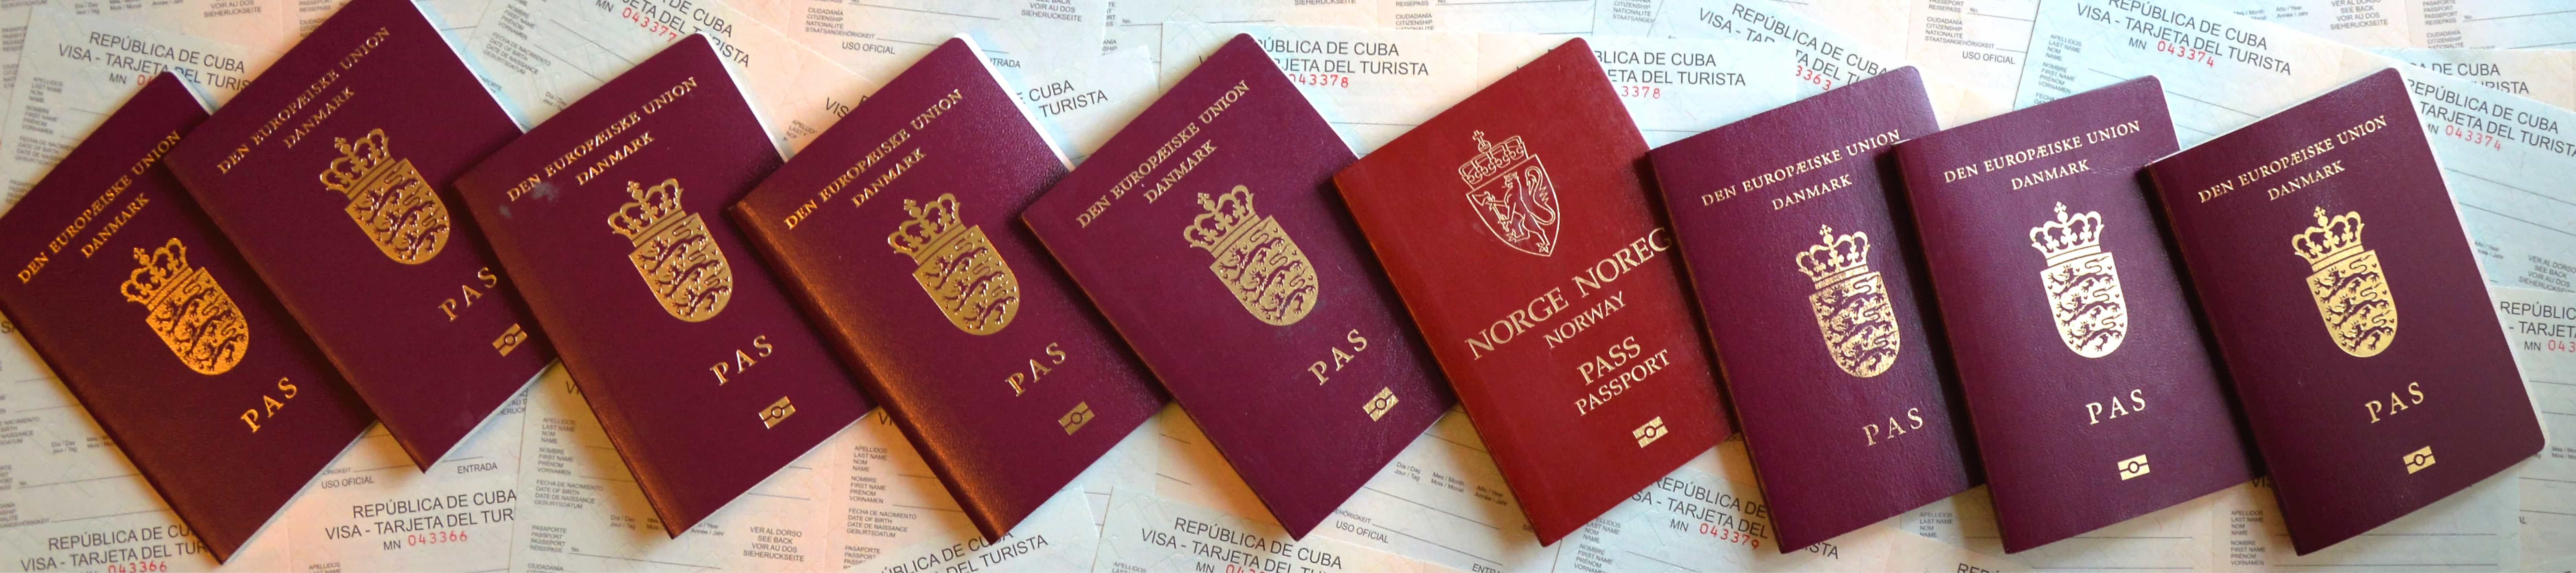 Du skal altid huske at købe et visum, inden du rejser til Cuba